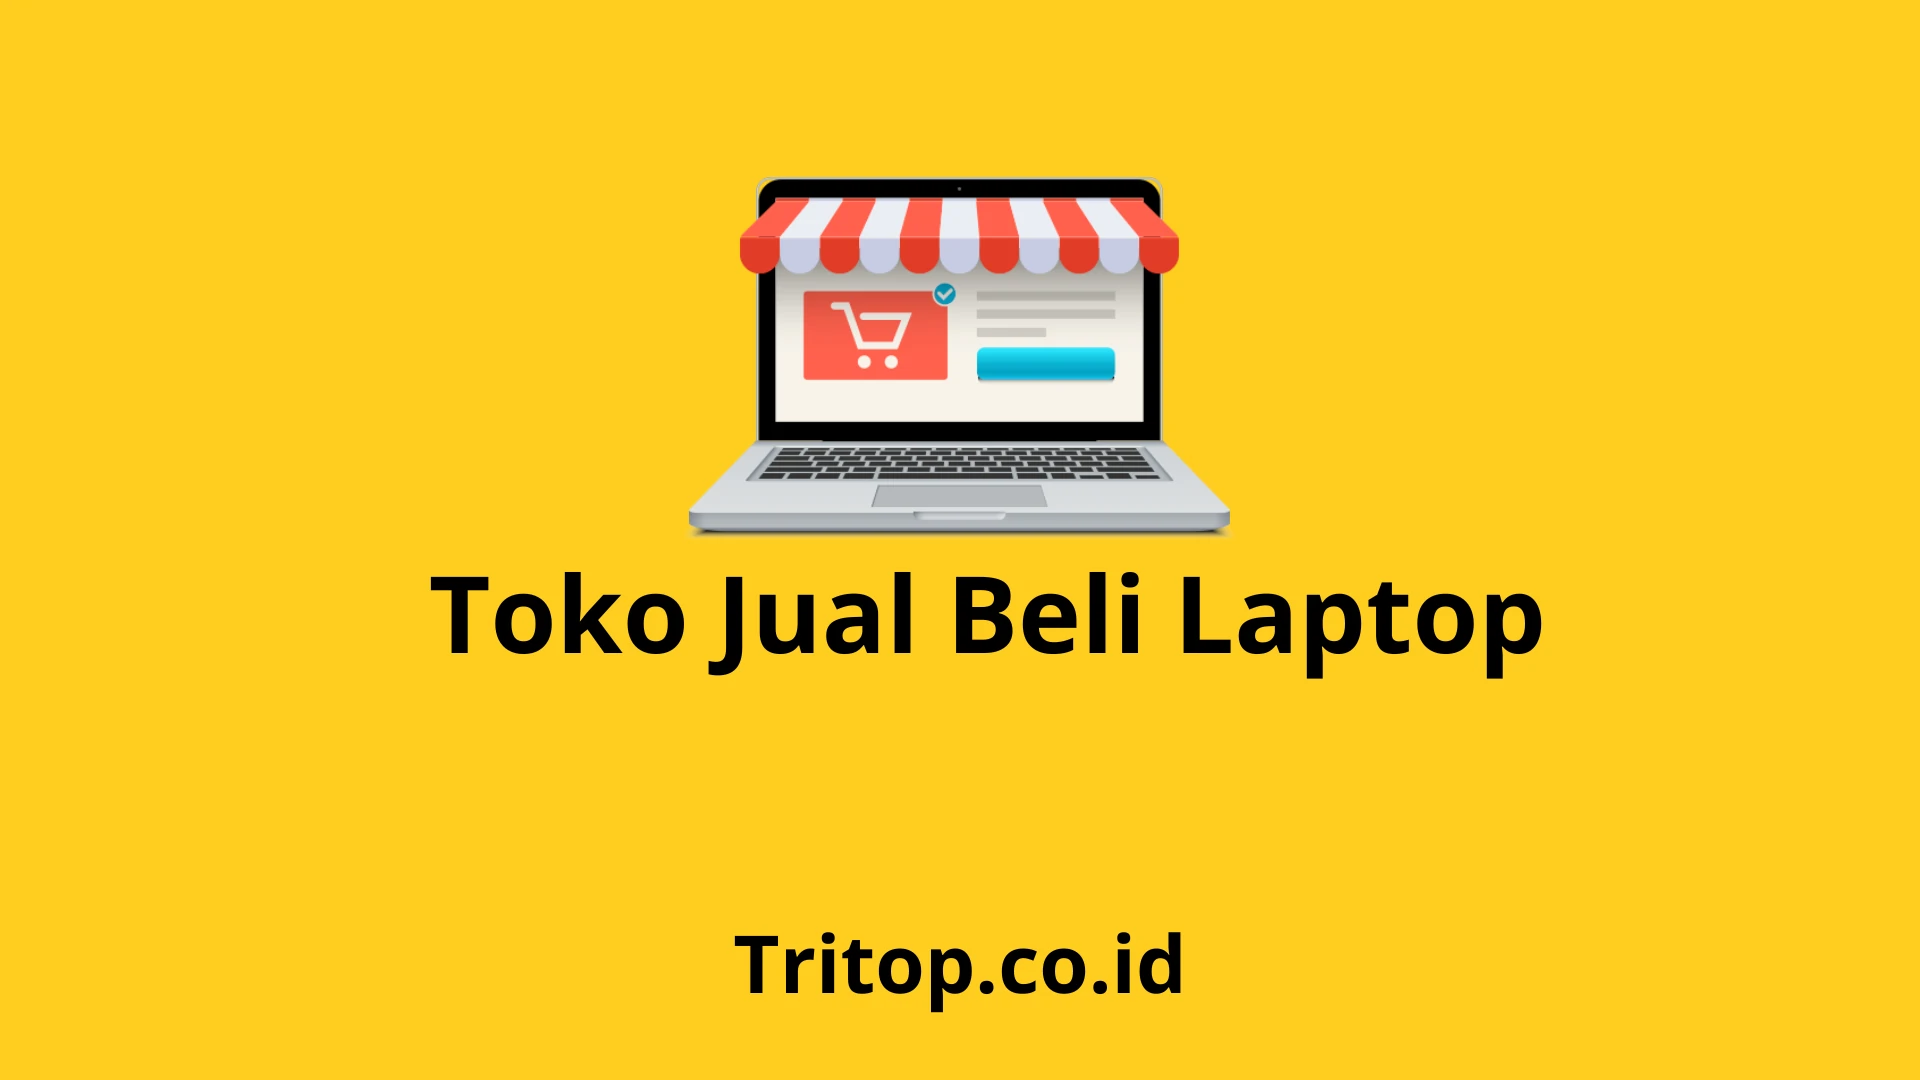 Toko Jual Beli Laptop Tritop.co.id